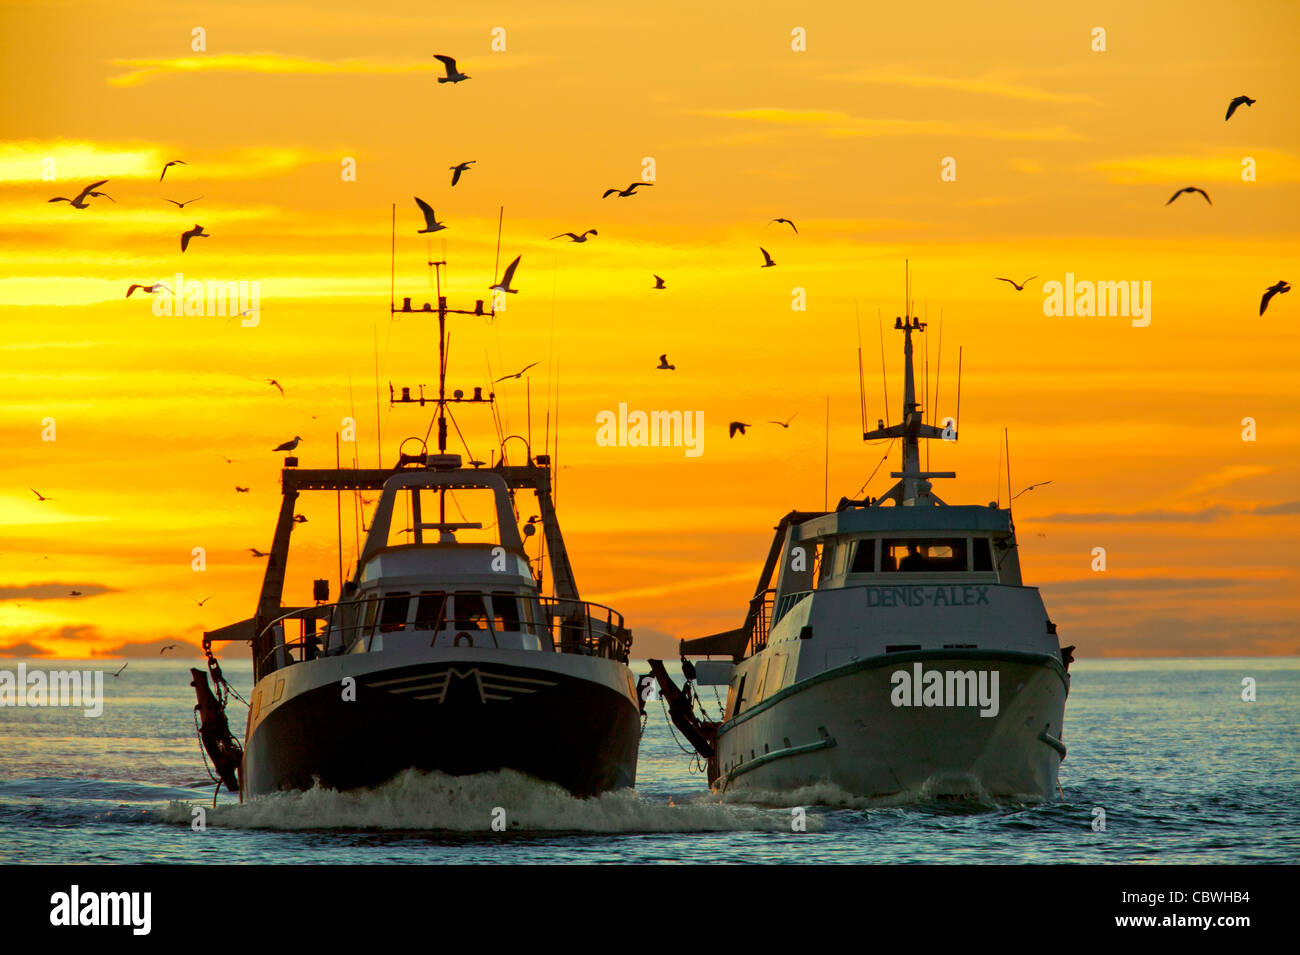 Des bateaux de pêche, Mer Méditerranée, France Banque D'Images